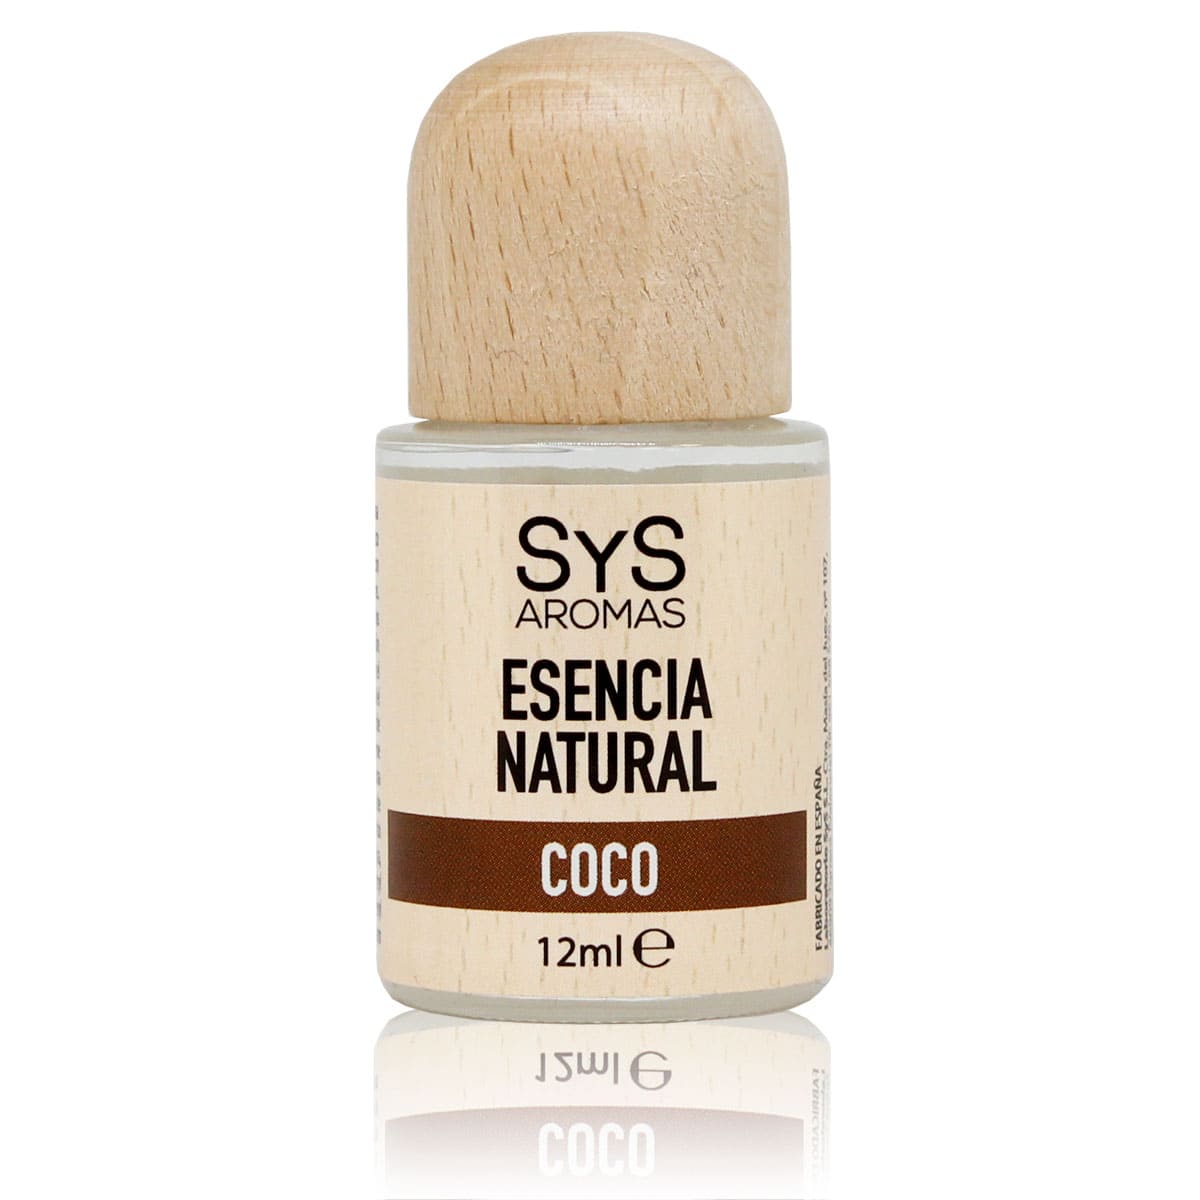 Buy Coco Essence 12ml SYS Aromas